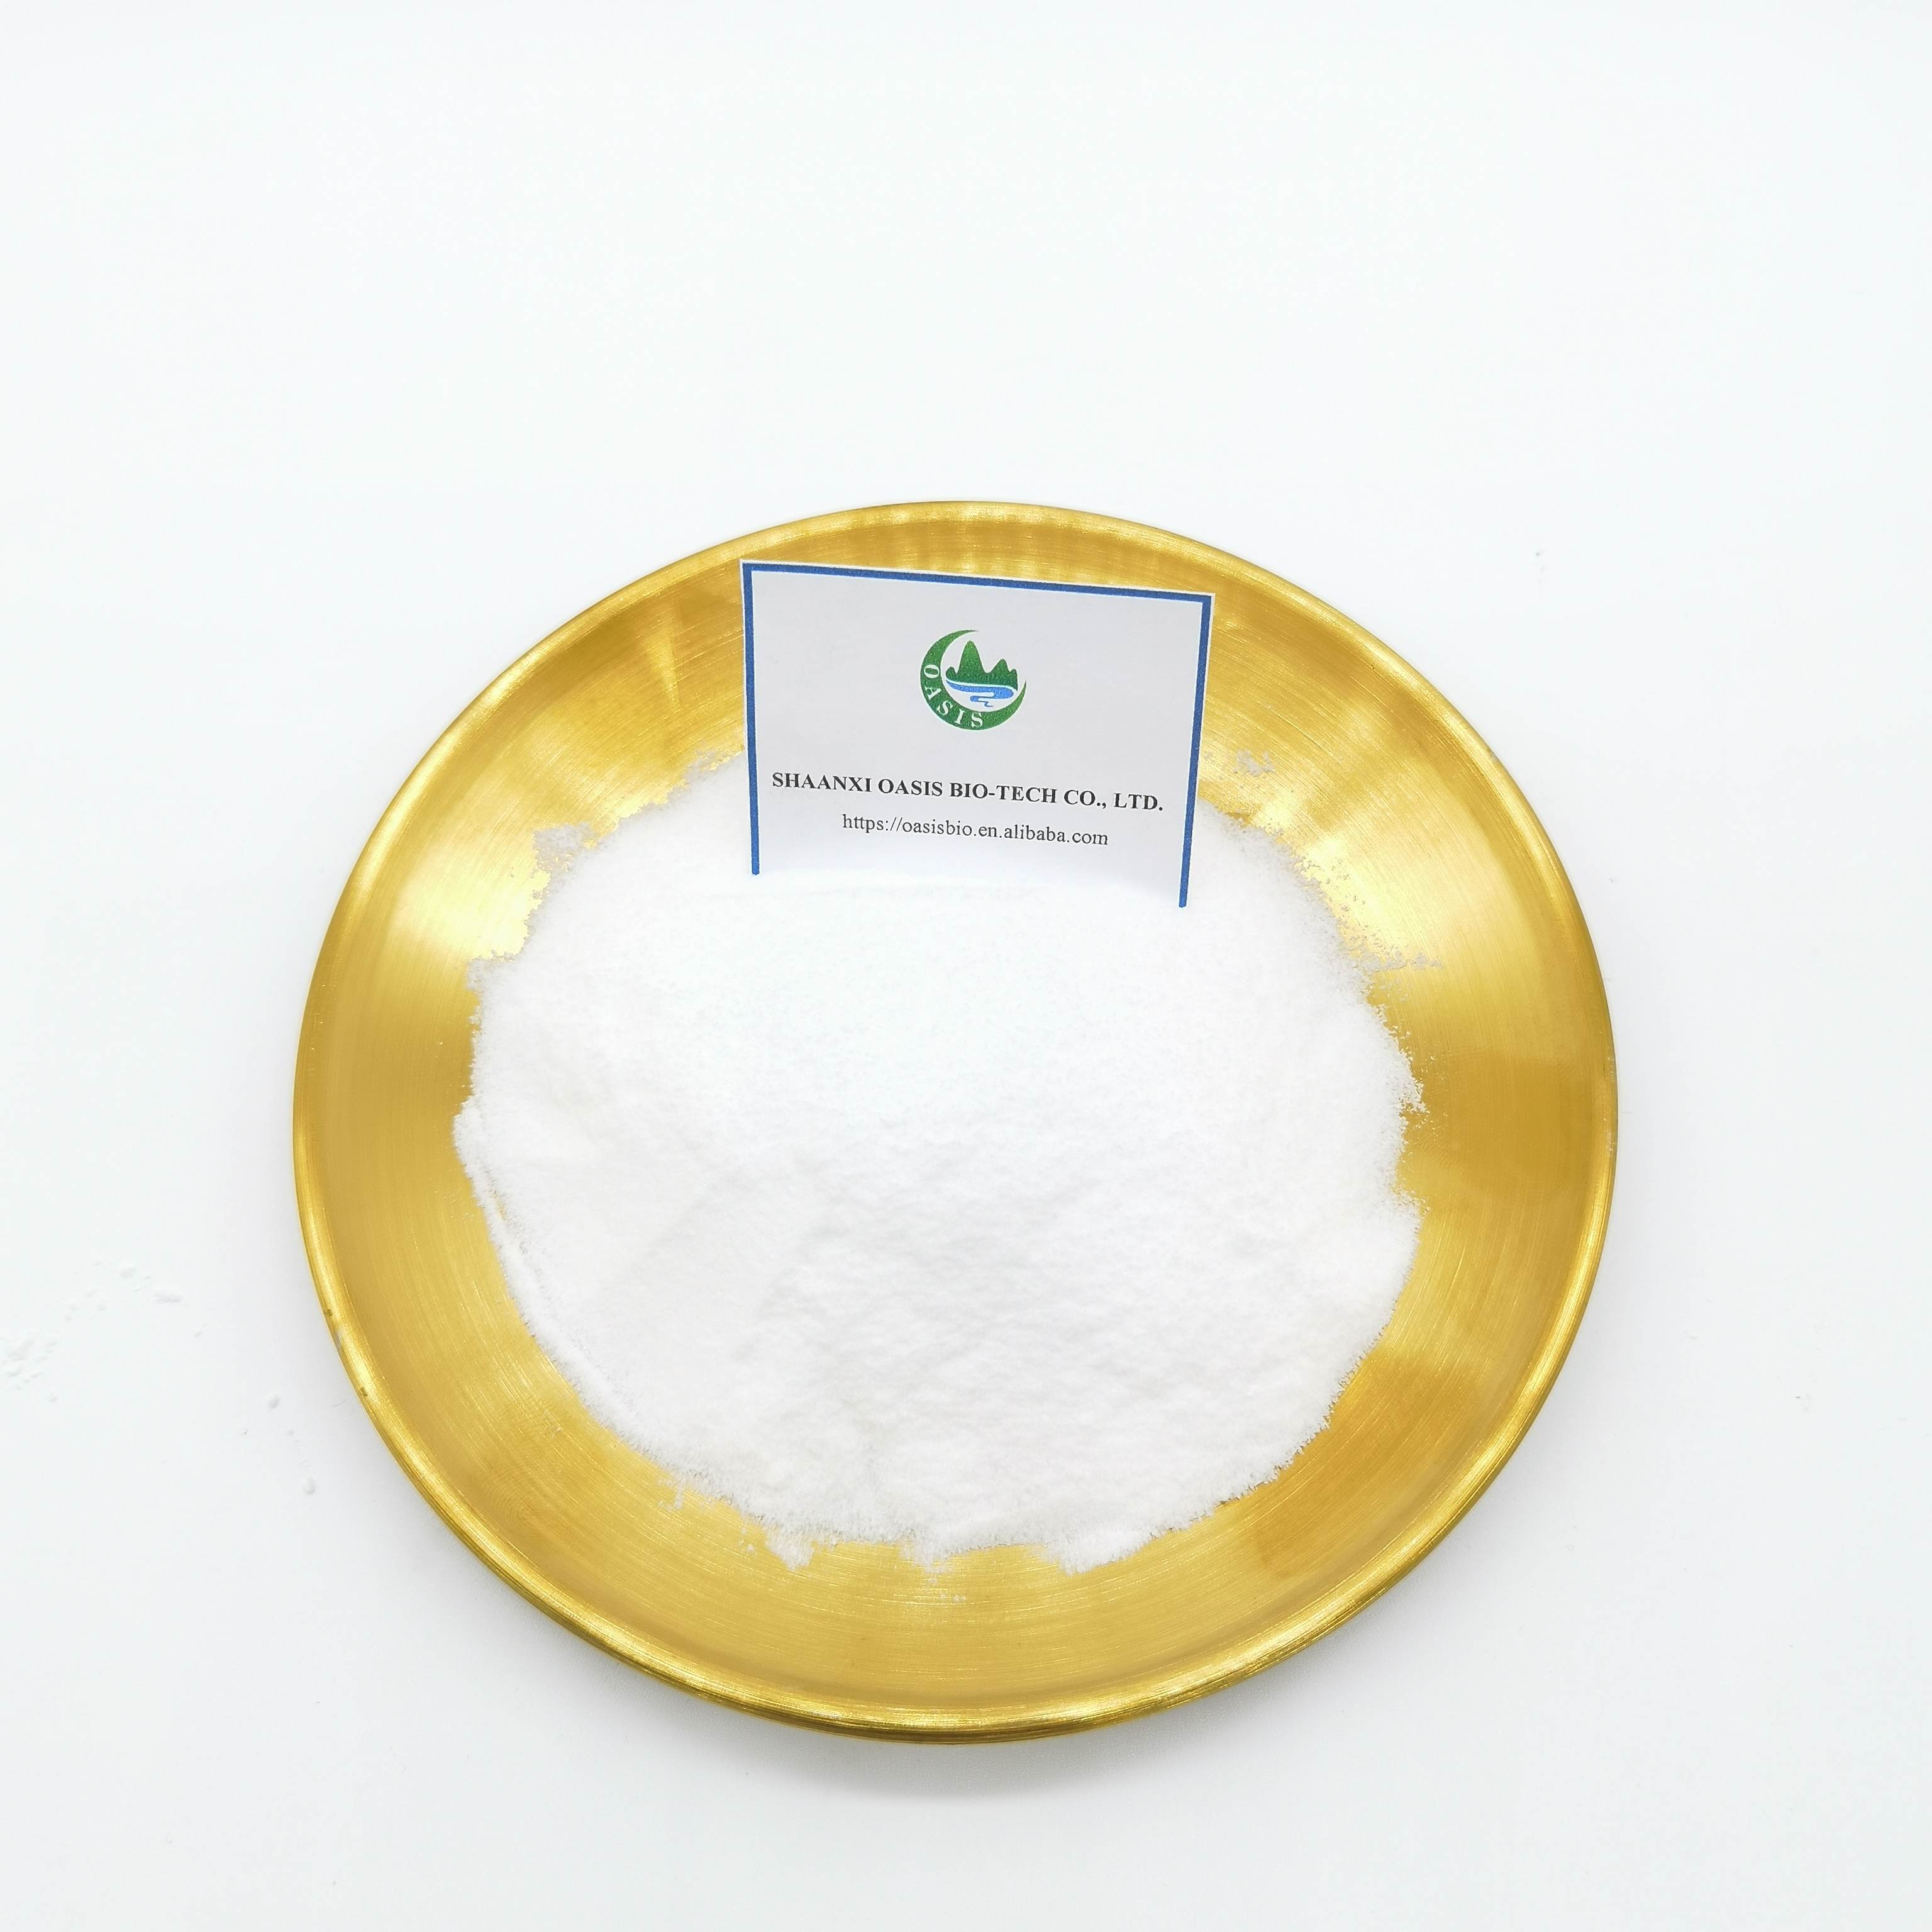 Suministro de polvo de ivermectina CAS 70288-86-7 de alta calidad